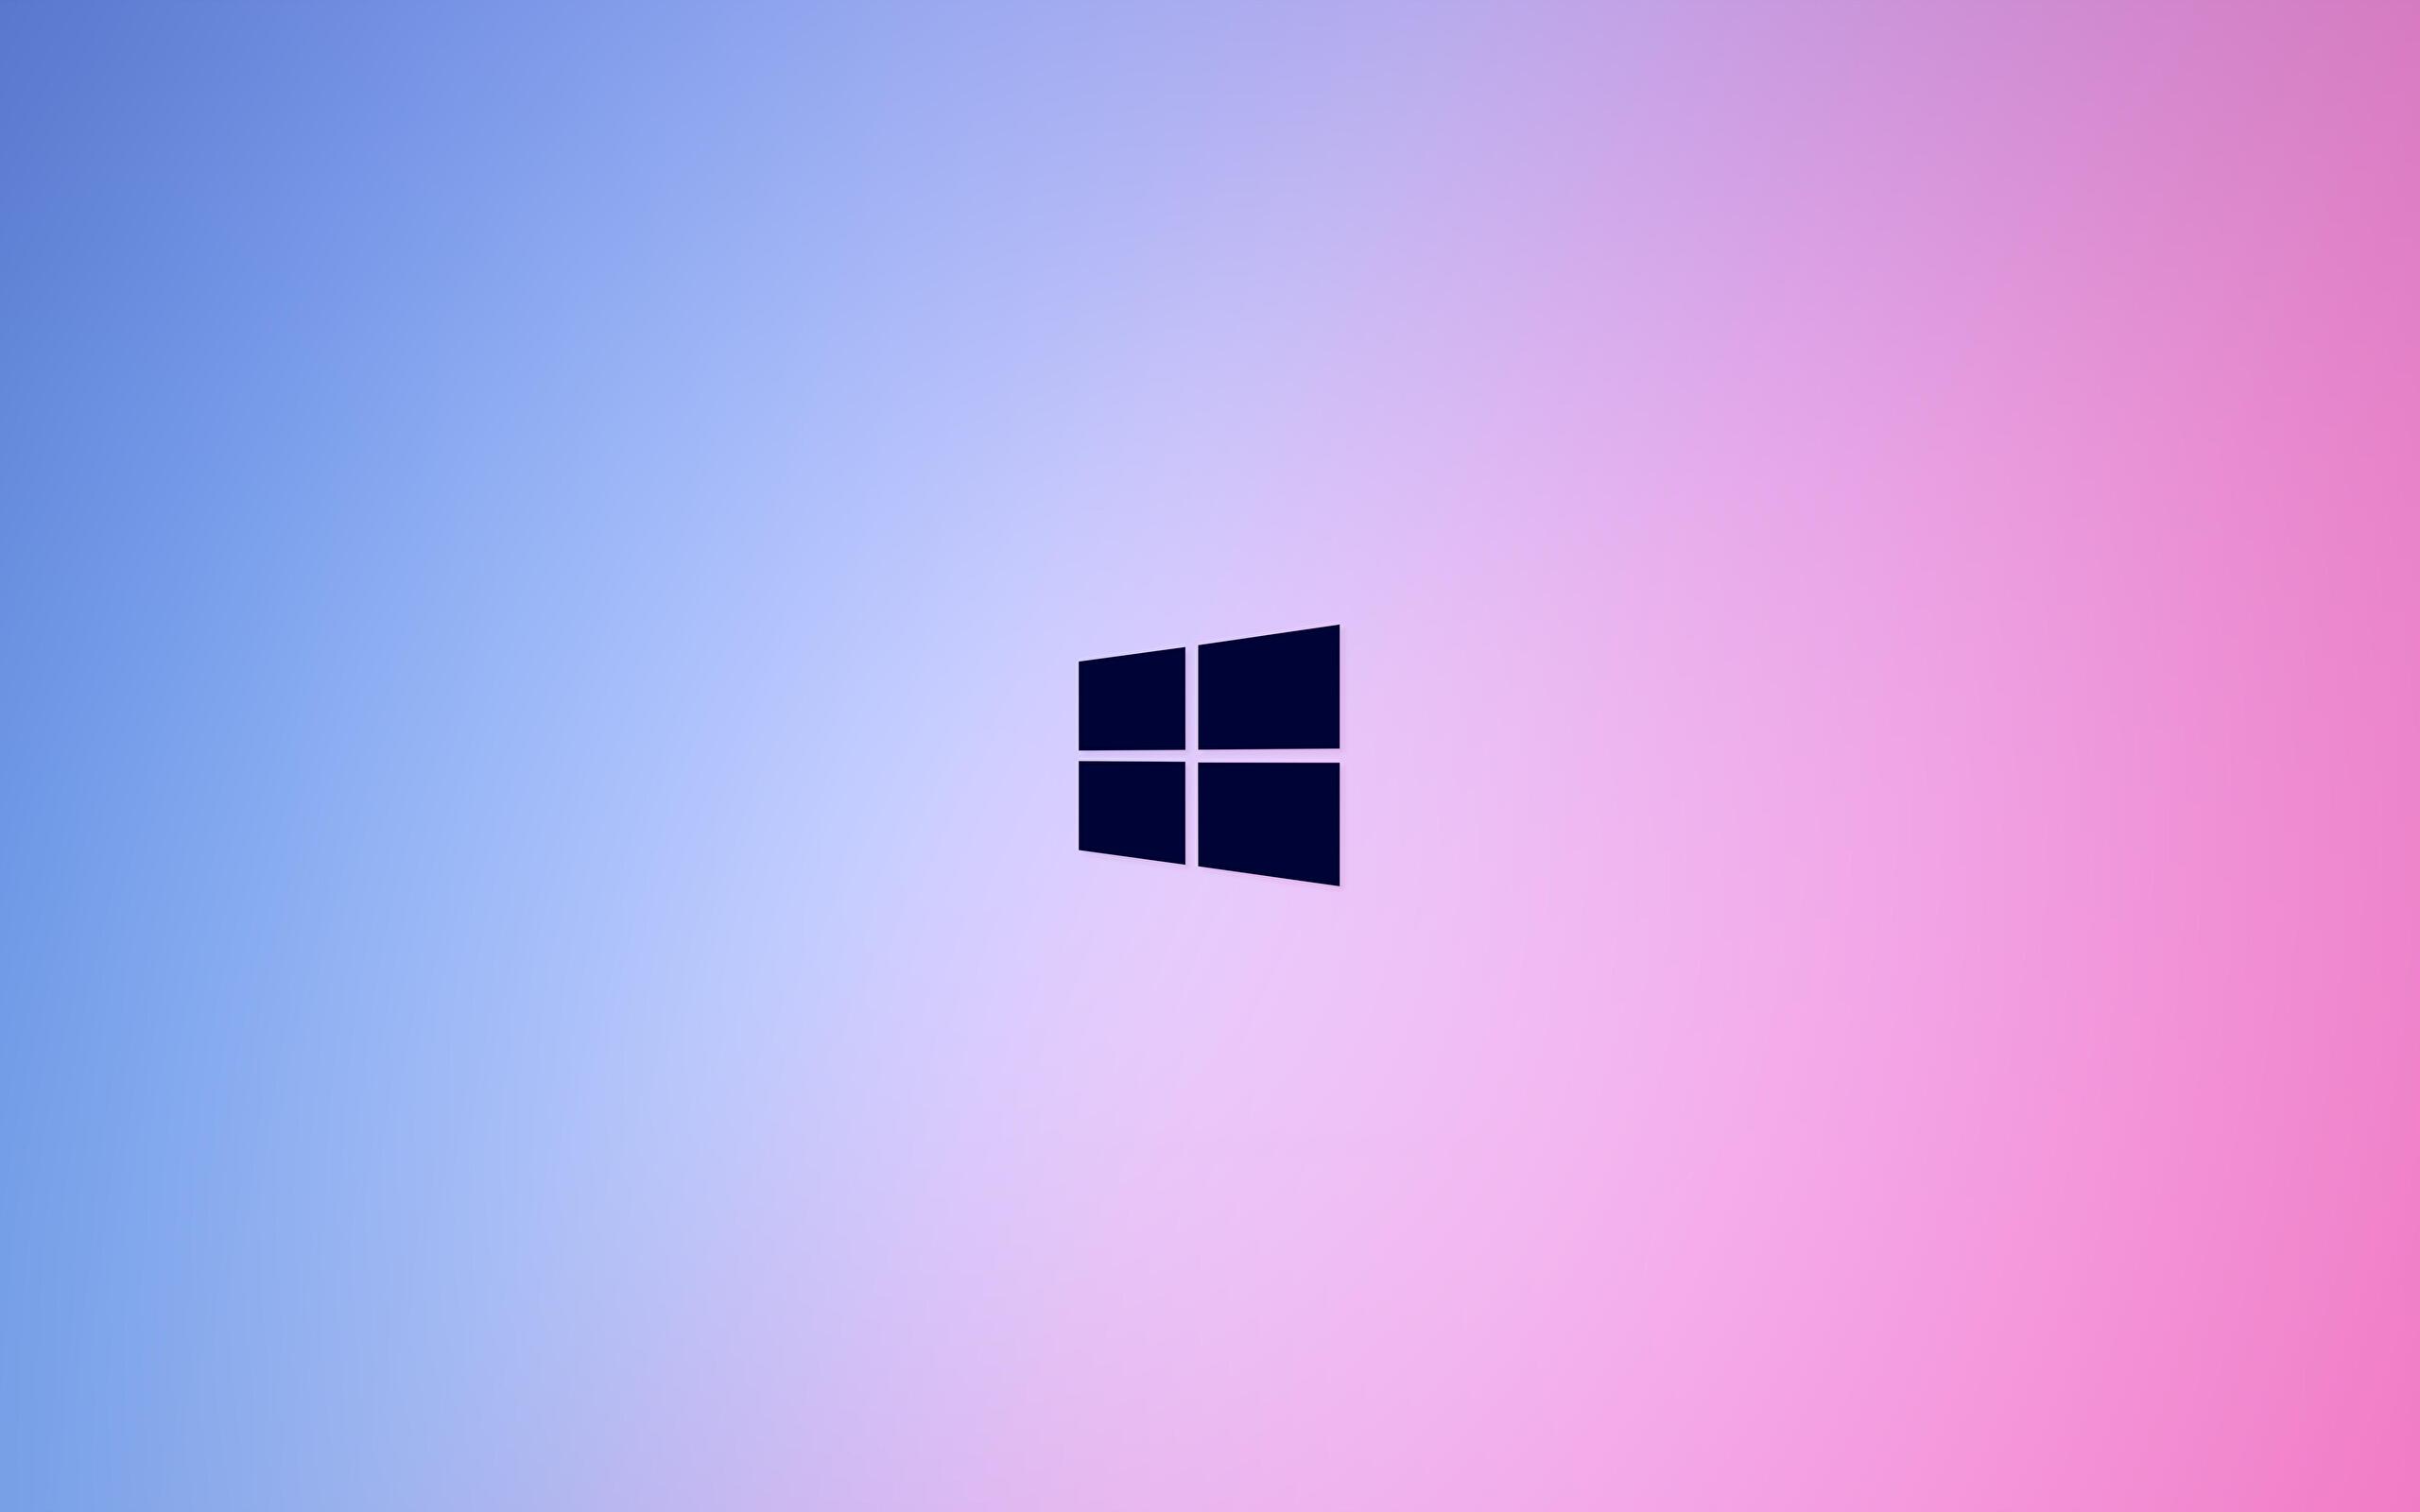 Hình nền Windows 10 màu hồng - Top miễn phí hình nền Windows 10 màu hồng: Đừng bỏ lỡ những bộ sưu tập hình nền Windows 10 màu hồng miễn phí tuyệt đẹp nhất. Chúng tôi cập nhật nhiều hình ảnh mới lạ và độc đáo hàng ngày, giúp cho chiếc máy tính của bạn trở nên đẹp hơn và phong cách hơn.